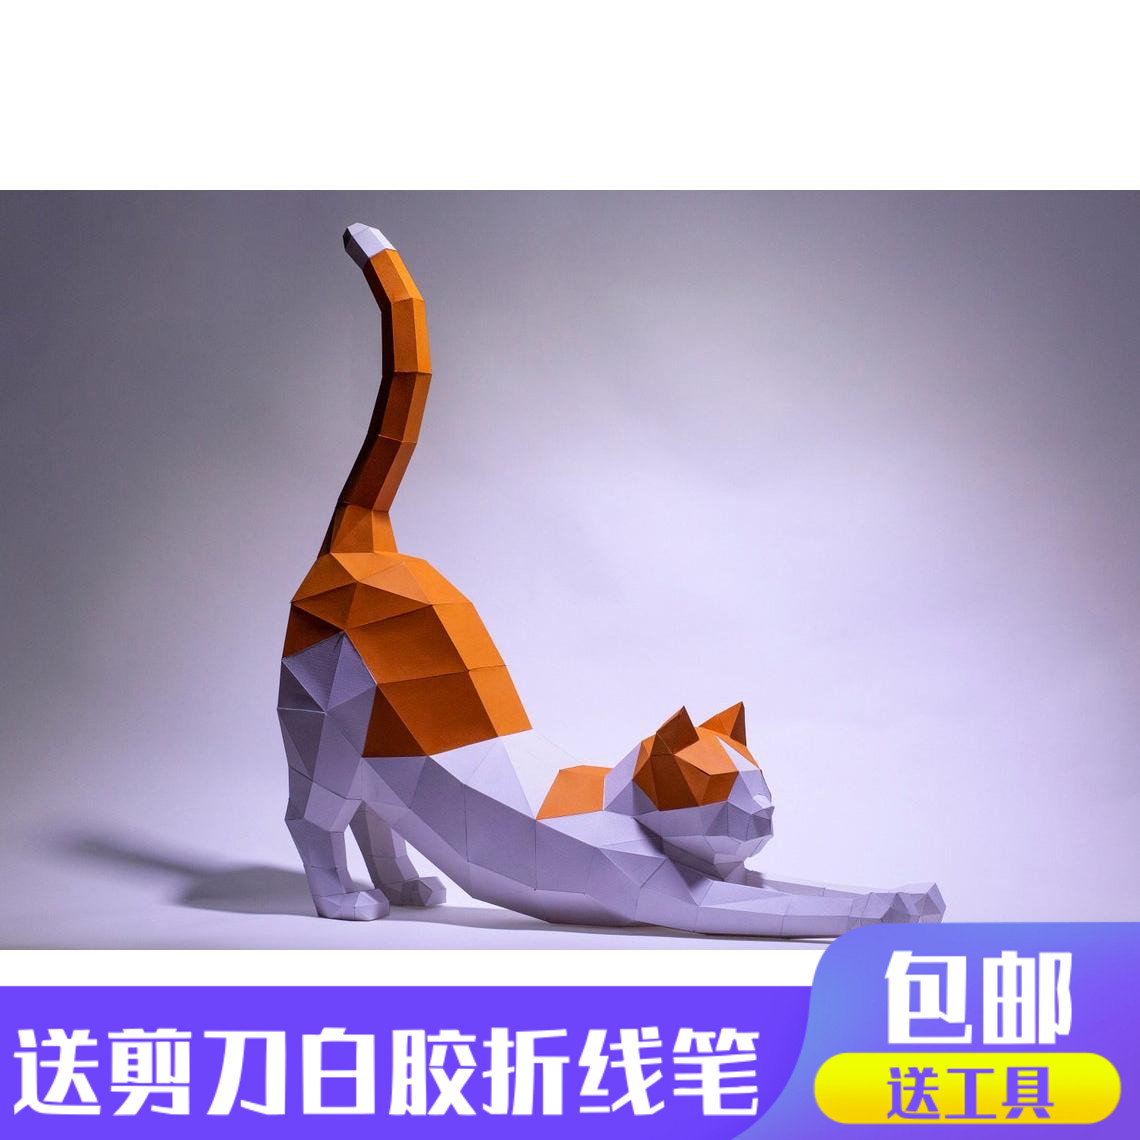 伸懒腰的小猫 3d立体纸模型DIY手工纸模摆件玩具几何折纸立体构成